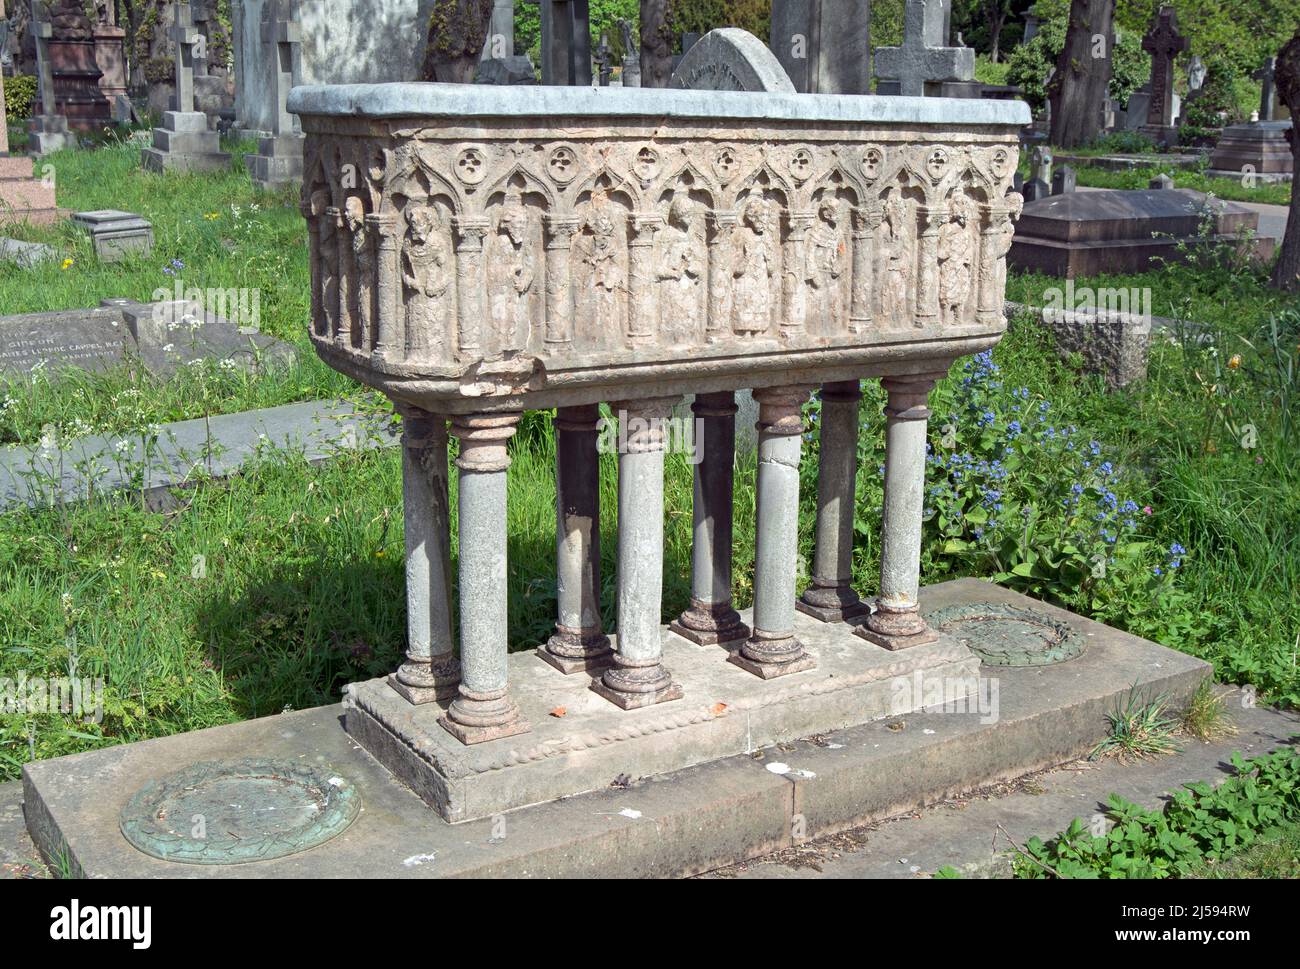 el cofre de la tumba del artista y escritor pre-raphaelita, san valentín prinsep, cementerio de brompton, londres, inglaterra Foto de stock